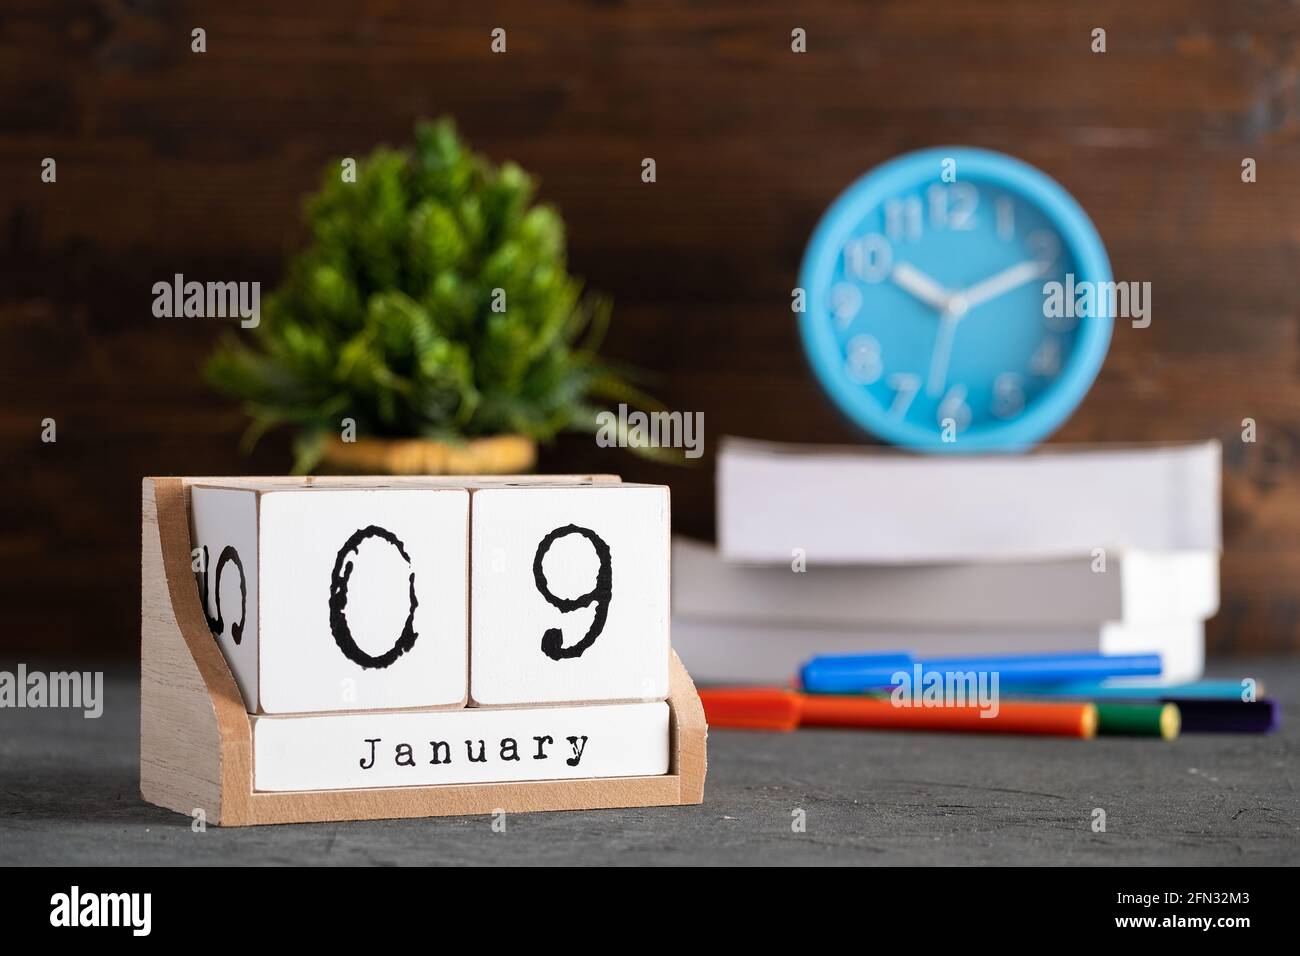 Le 09 janvier. Janvier 09 calendrier cube en bois avec des objets flous sur fond. Banque D'Images